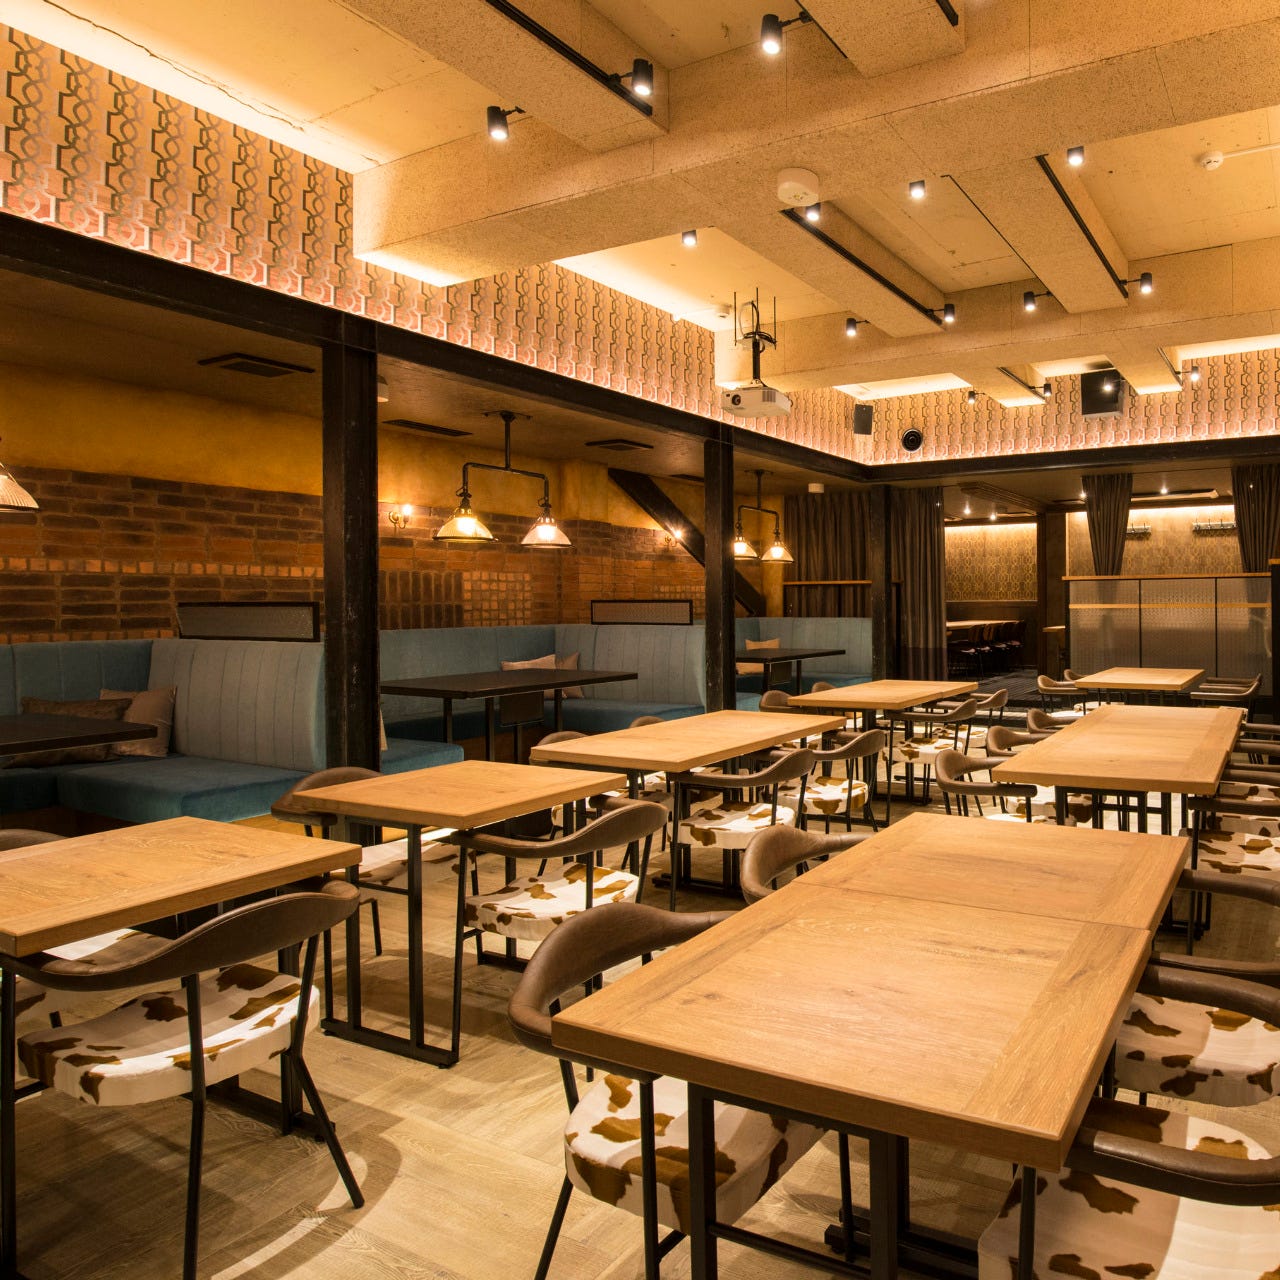 21年 最新グルメ 横浜駅にあるソファー席があるお店 レストラン カフェ 居酒屋のネット予約 神奈川版